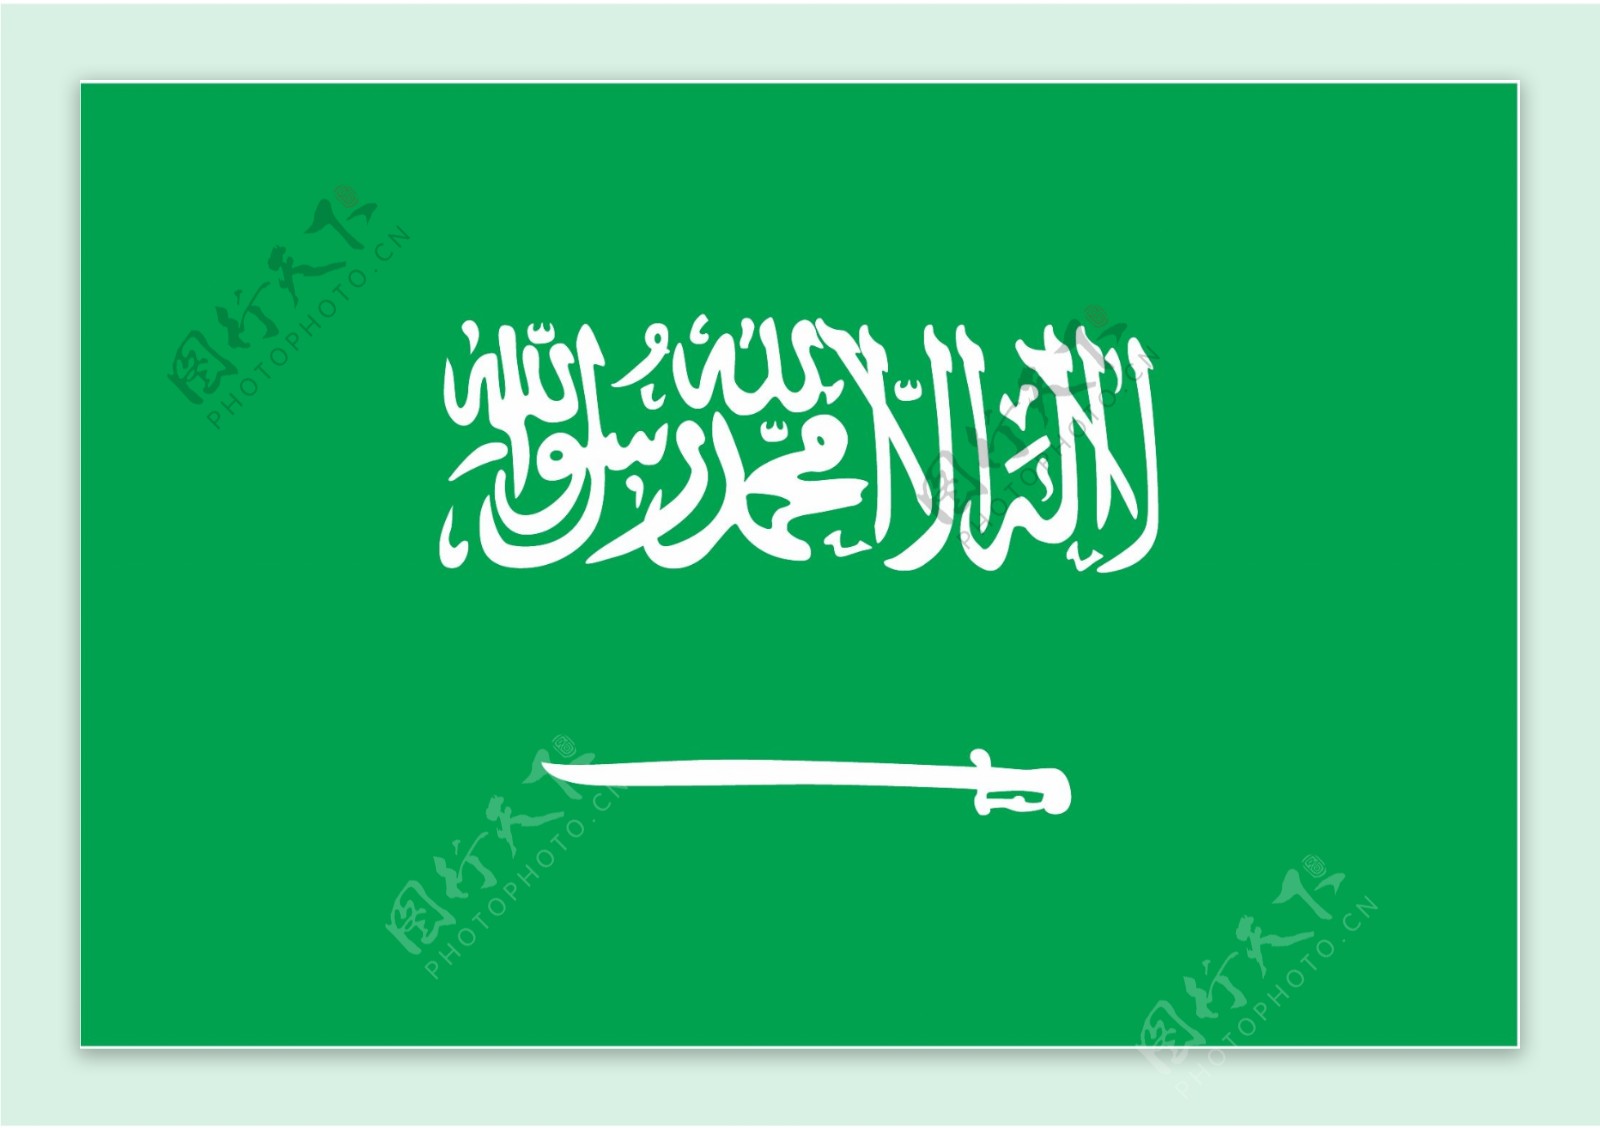 沙乌地阿拉伯的国旗